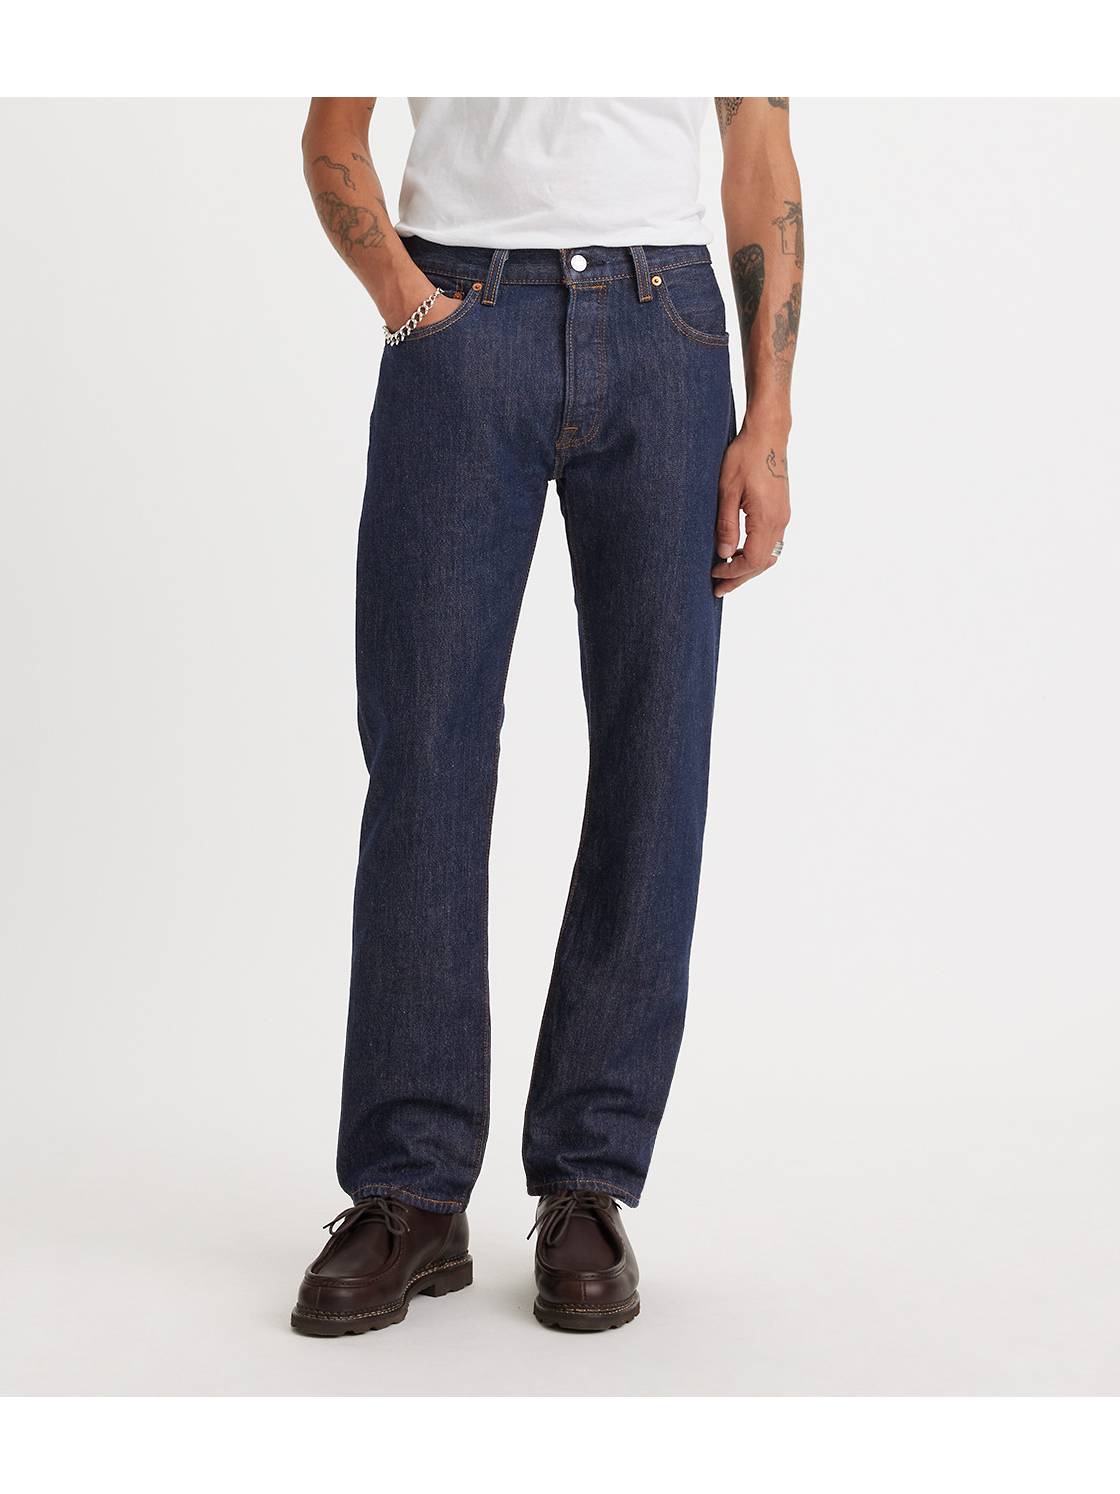 Glorious sne Skygge Men's Jeans: Shop the Best Jeans for Men | Levi's® US